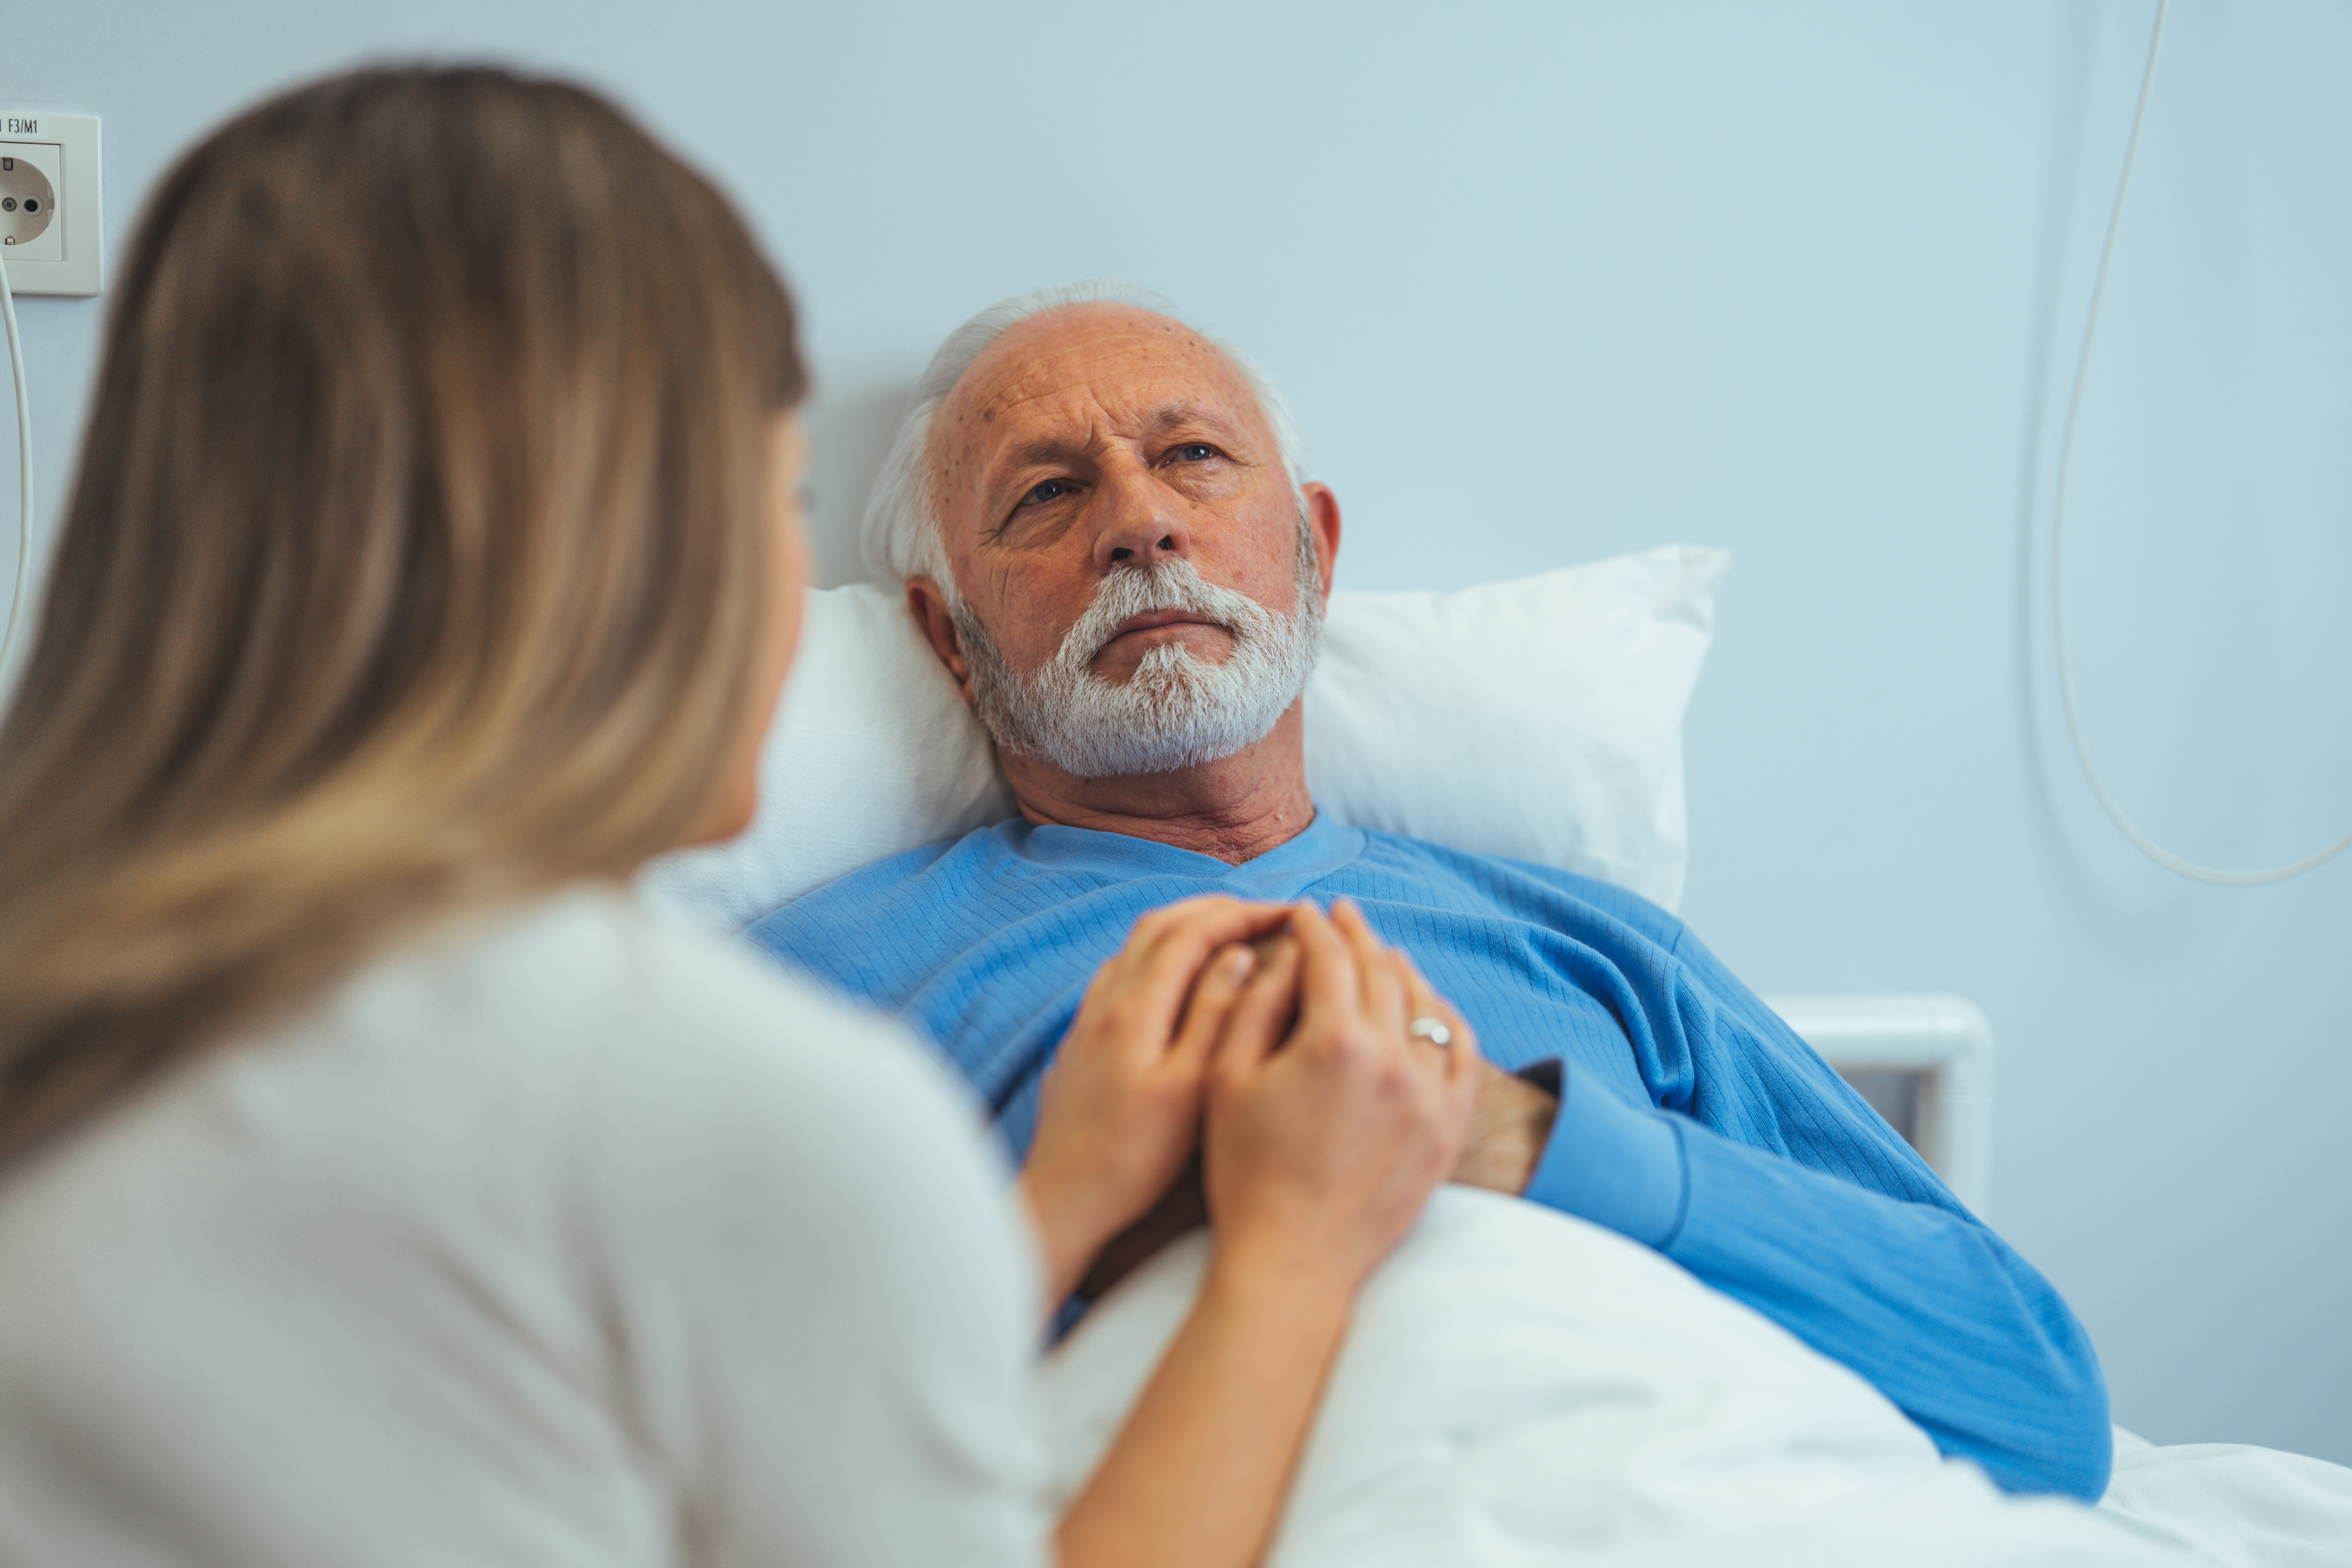 Une femme rendant visite à un patient âgé dans un hôpital | Source : Shutterstock